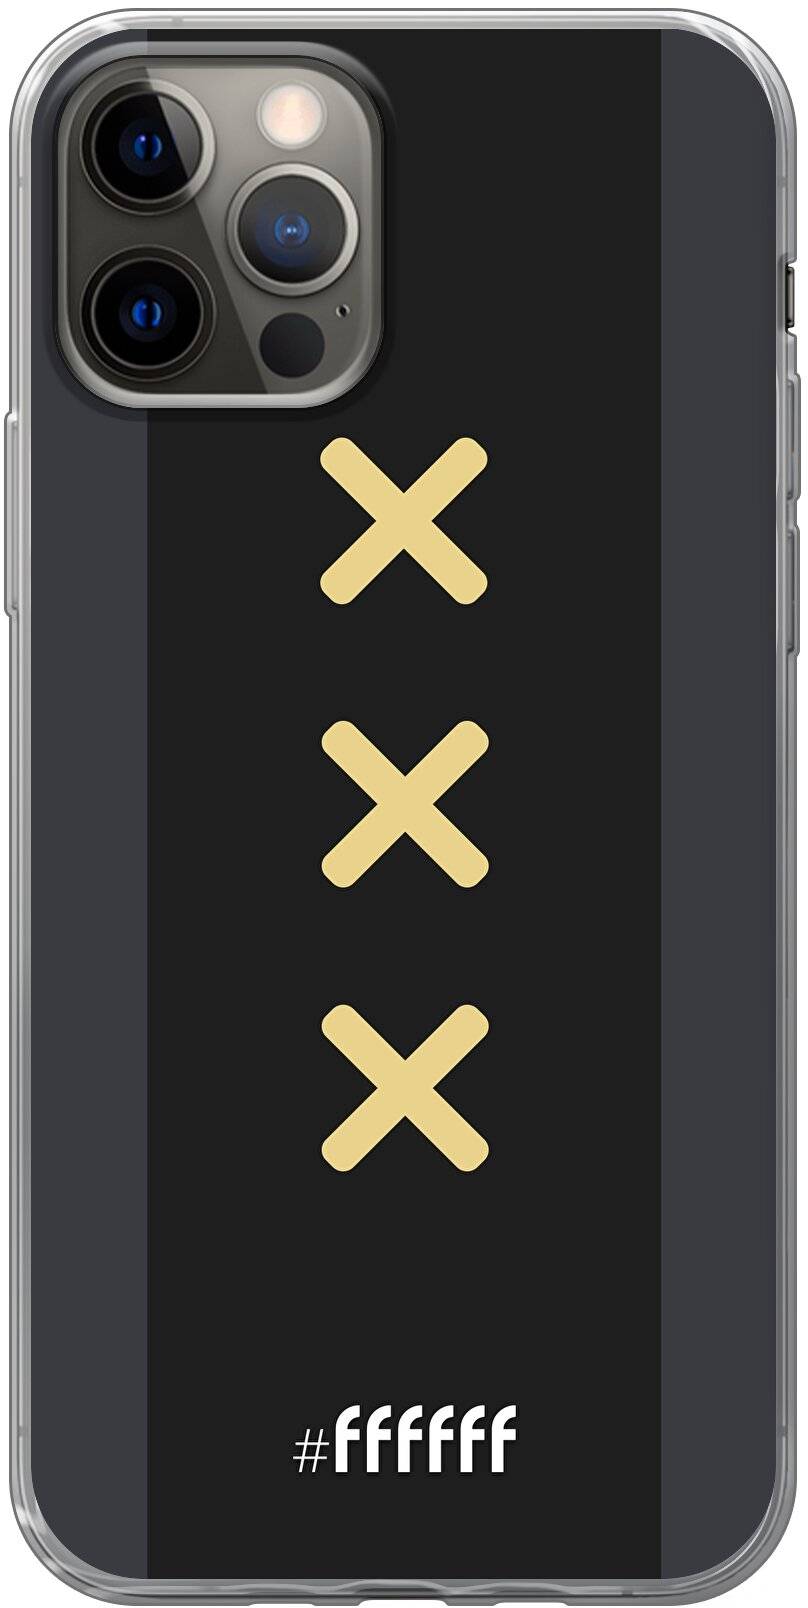 Ajax Europees Uitshirt 2020-2021 iPhone 12